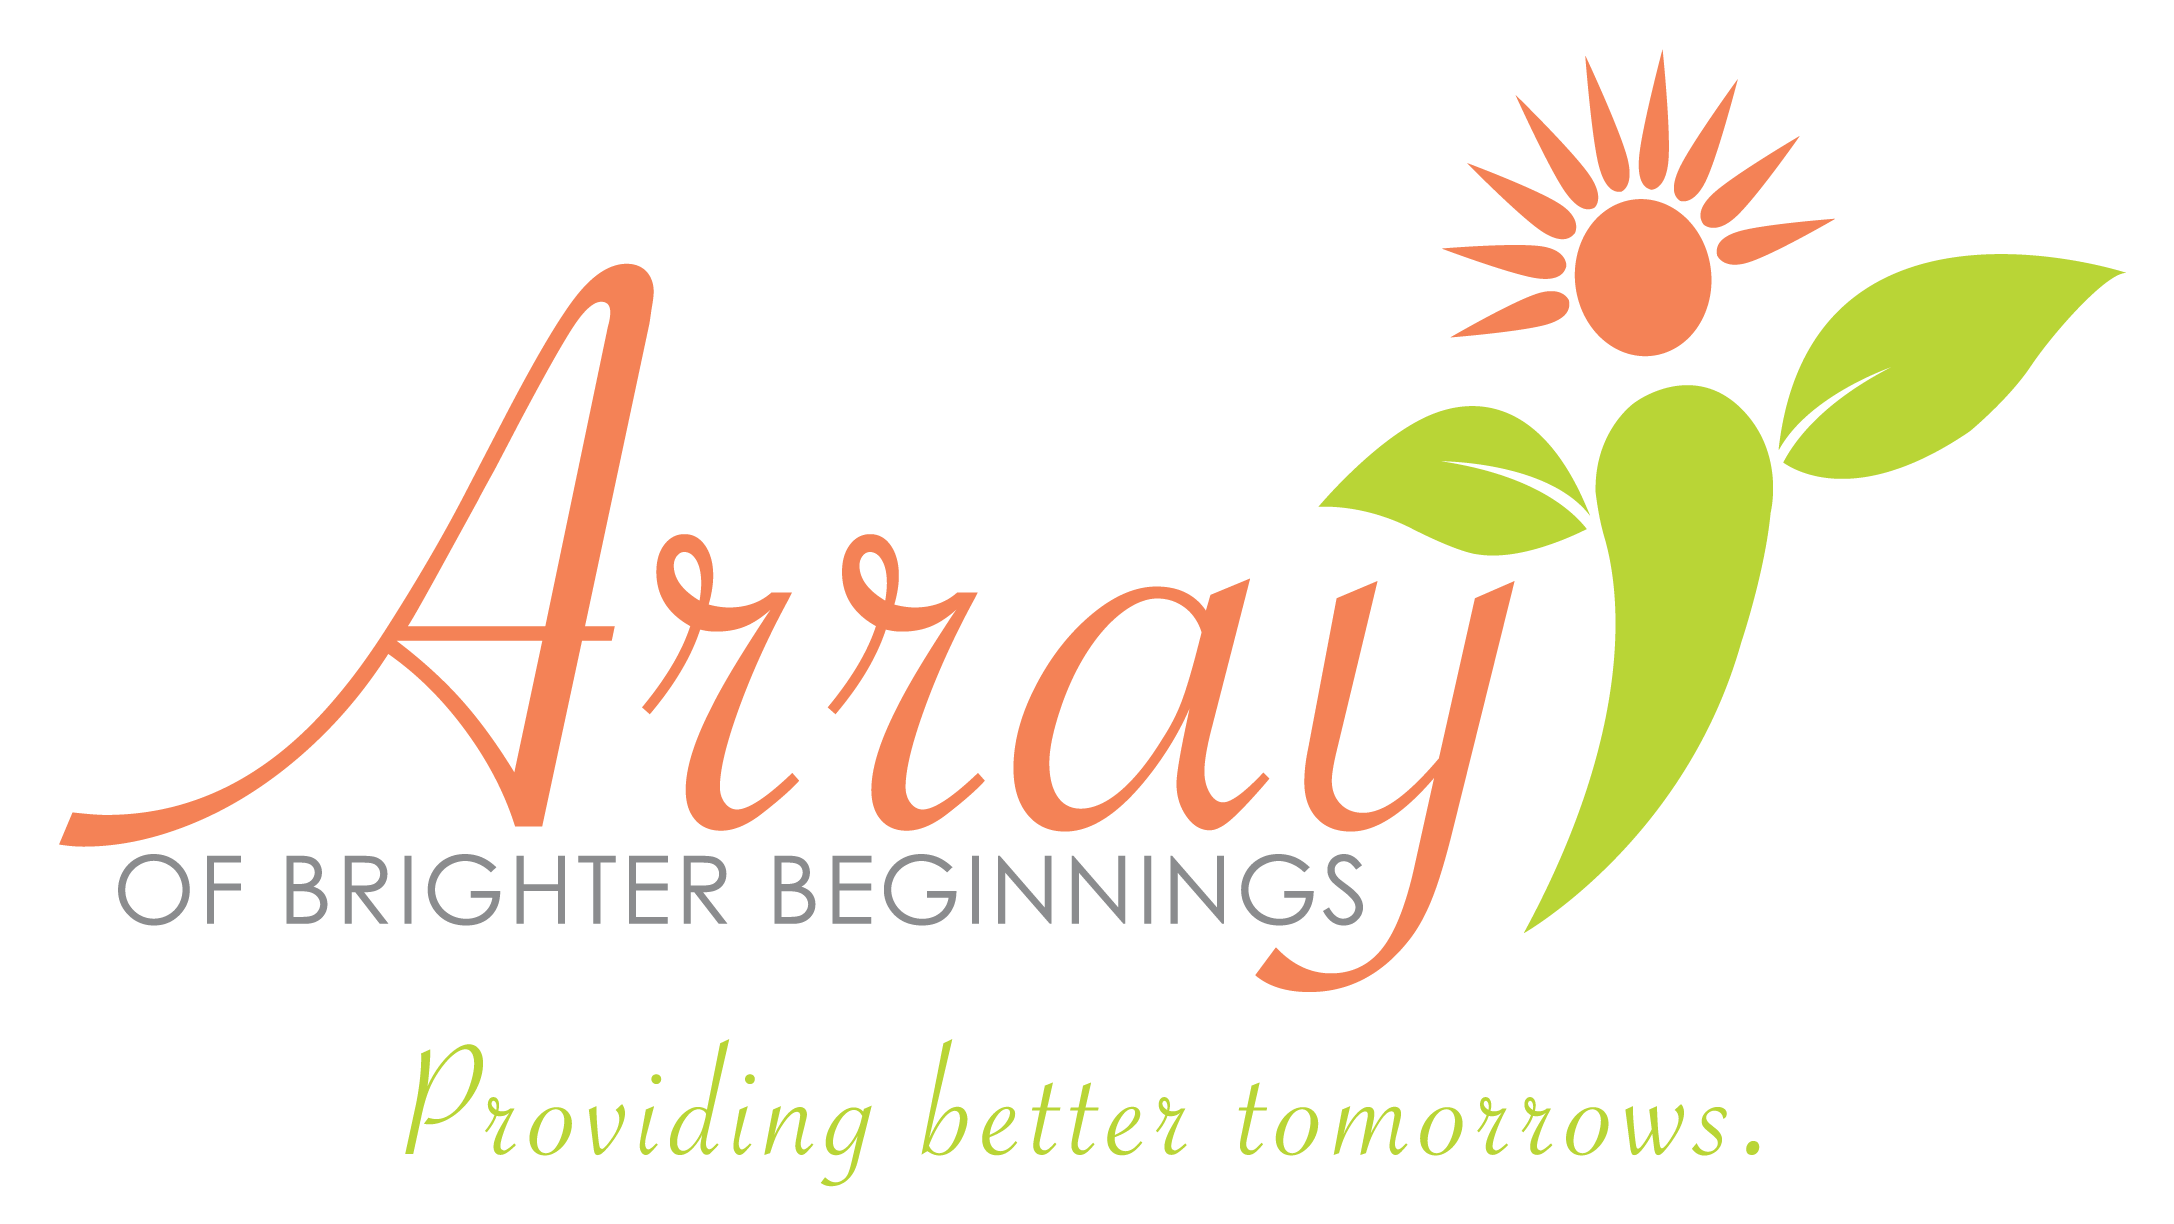 Array of Brighter Beginnings Inc. logo